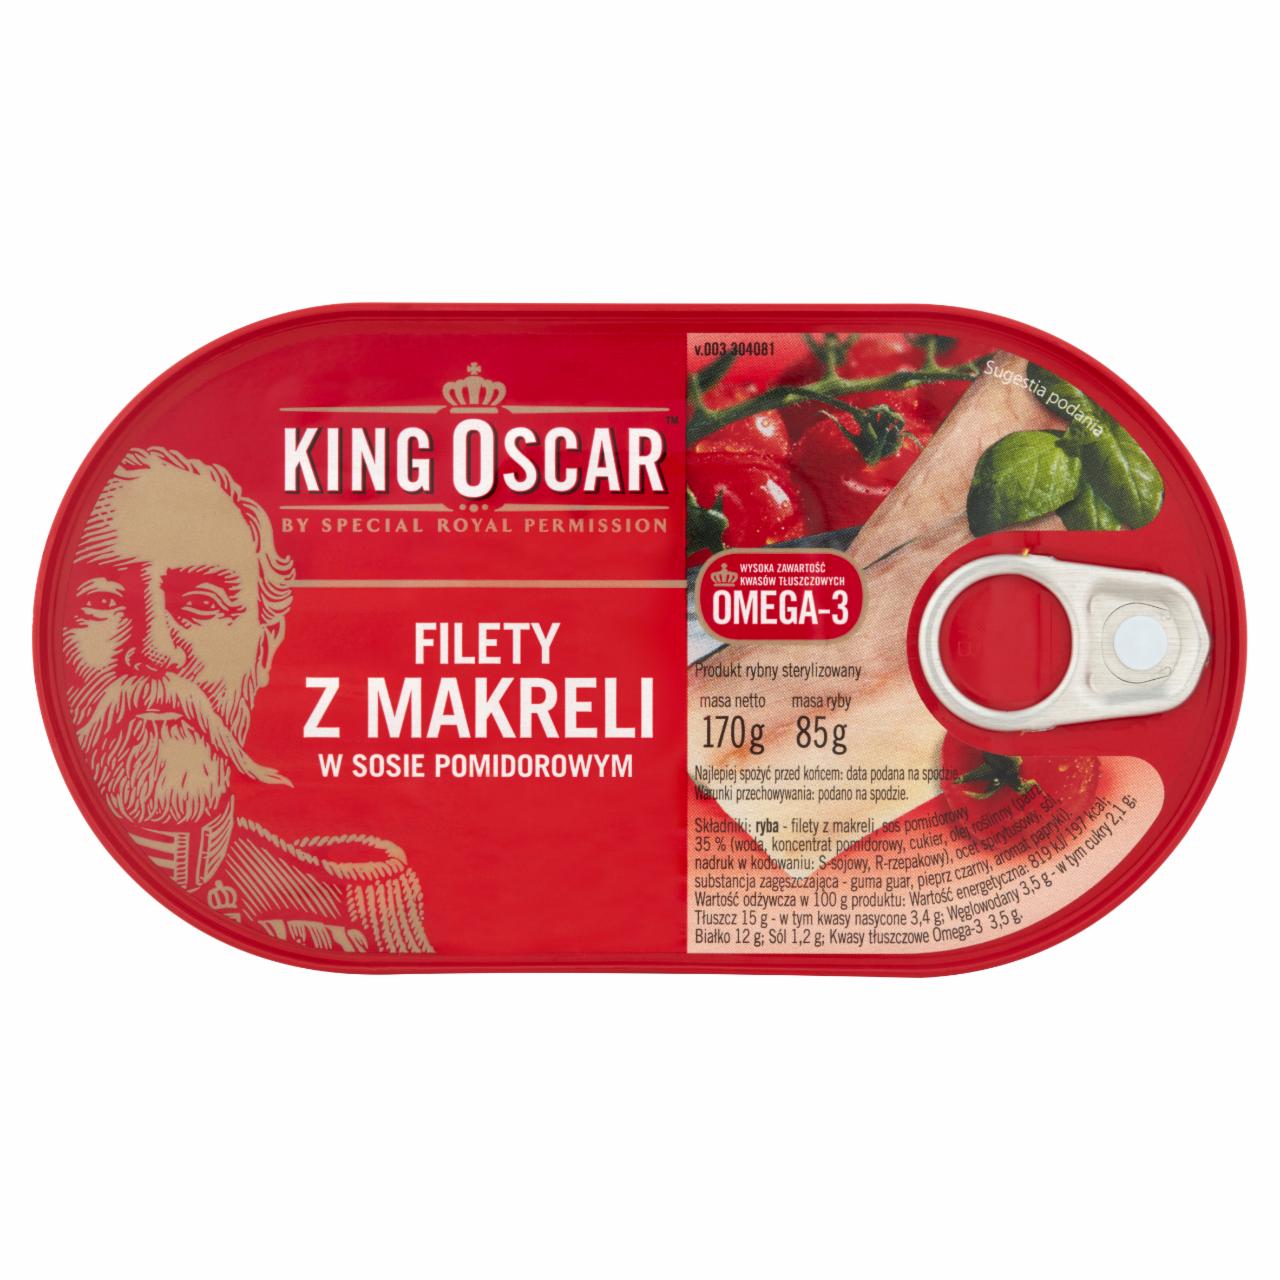 Zdjęcia - King Oscar Filety z makreli w sosie pomidorowym 170 g